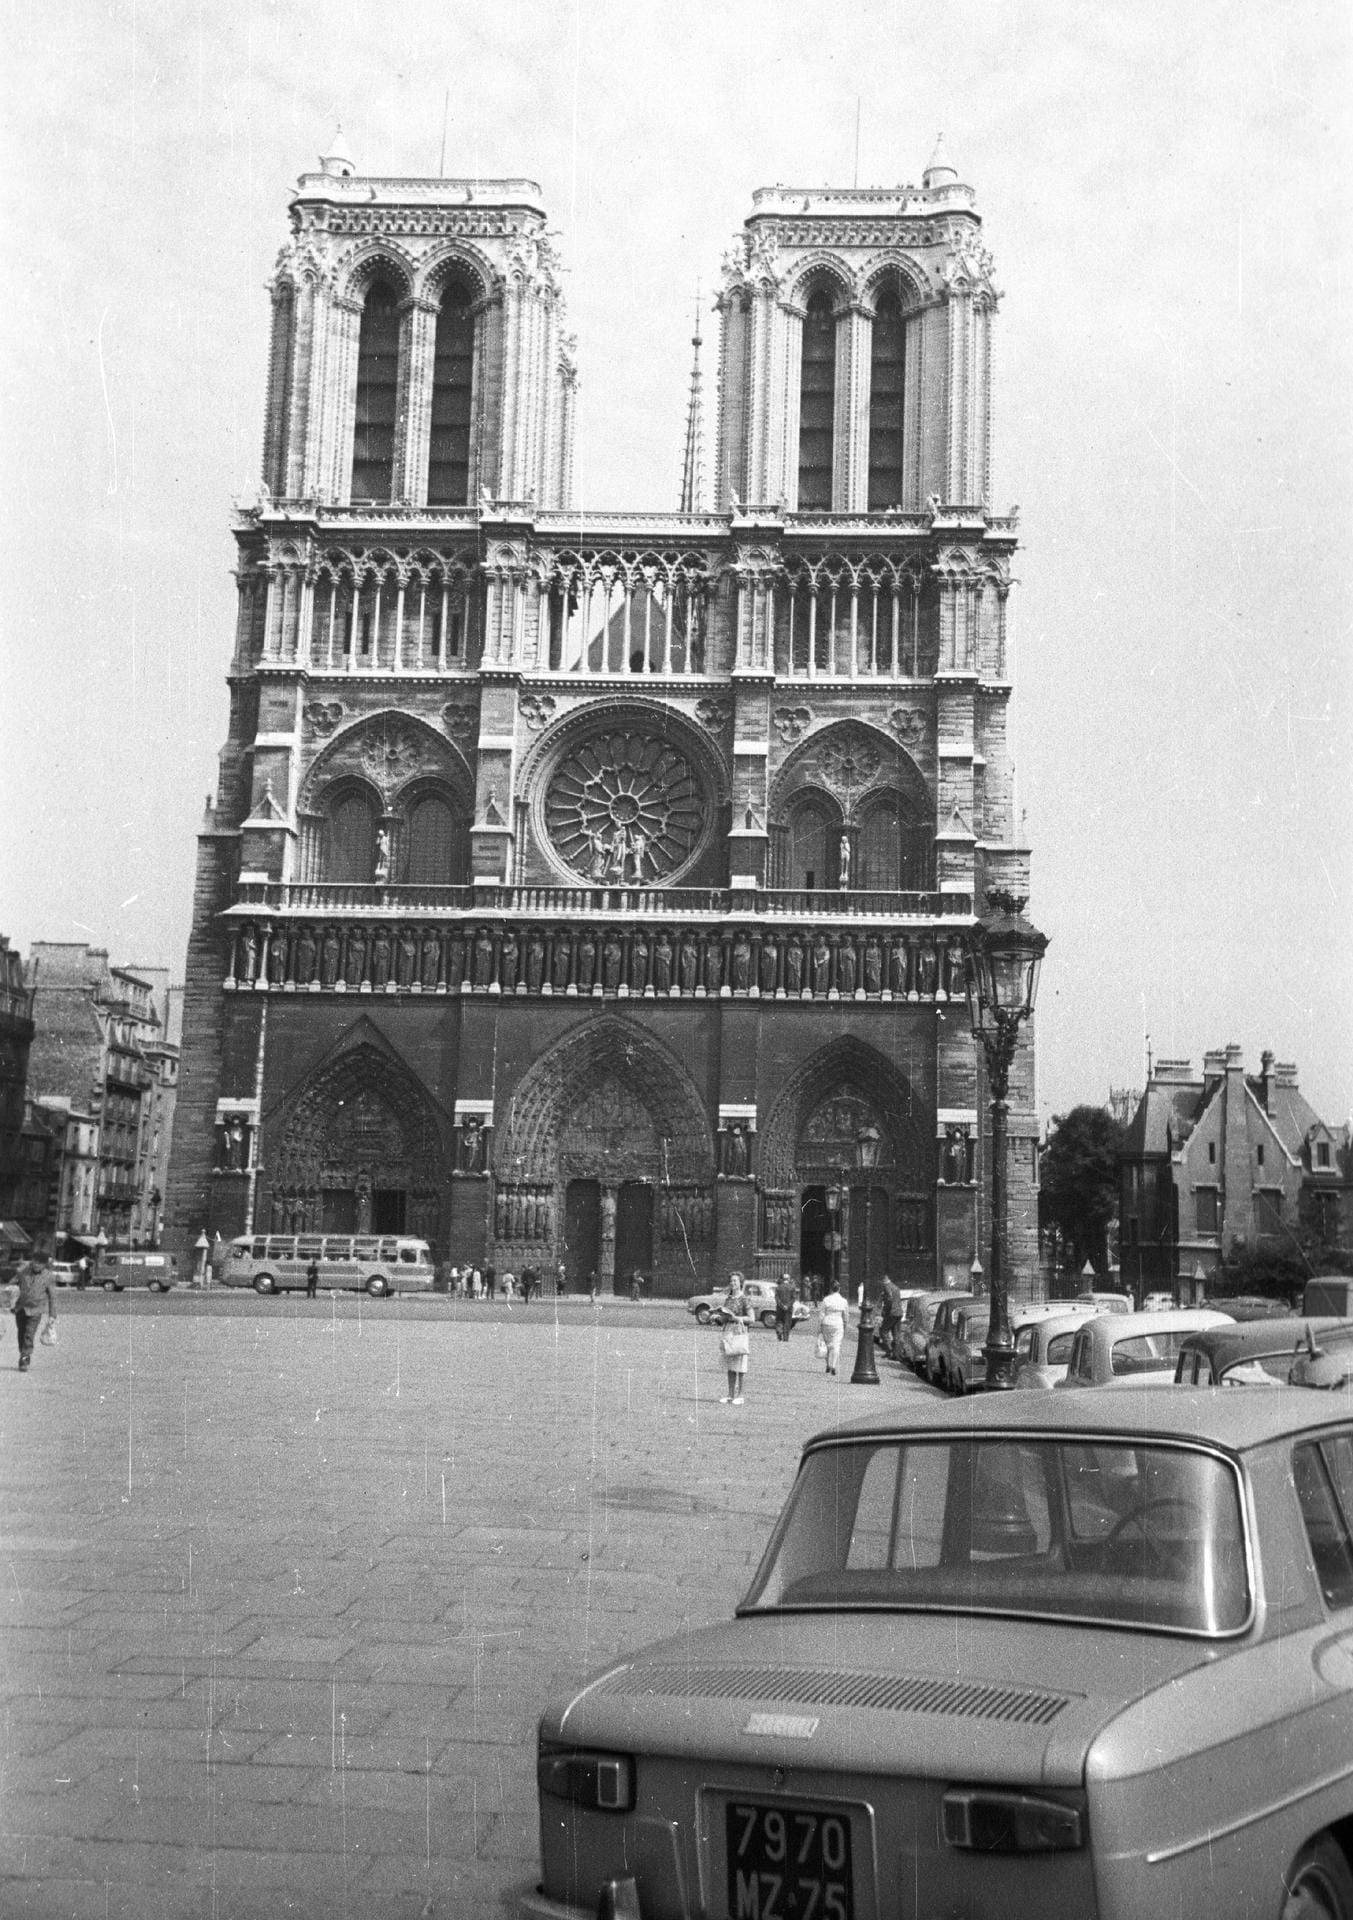 Westfassade der Kathedrale, 1964: Im Jahr 1250 vollendet, ist die Westfassade der Kirche eins der größten Erkennungsmerkmale von Notre-Dame. Sowohl an dieser Fassade, als auch an den Querhäusern verfügt die Kathedrale über bedeutende Figurenportale. Auch die mittig angeordnete Rosette von farbigen Fenstern der Westfassade von Notre-Dame ist weltweit bekannt.